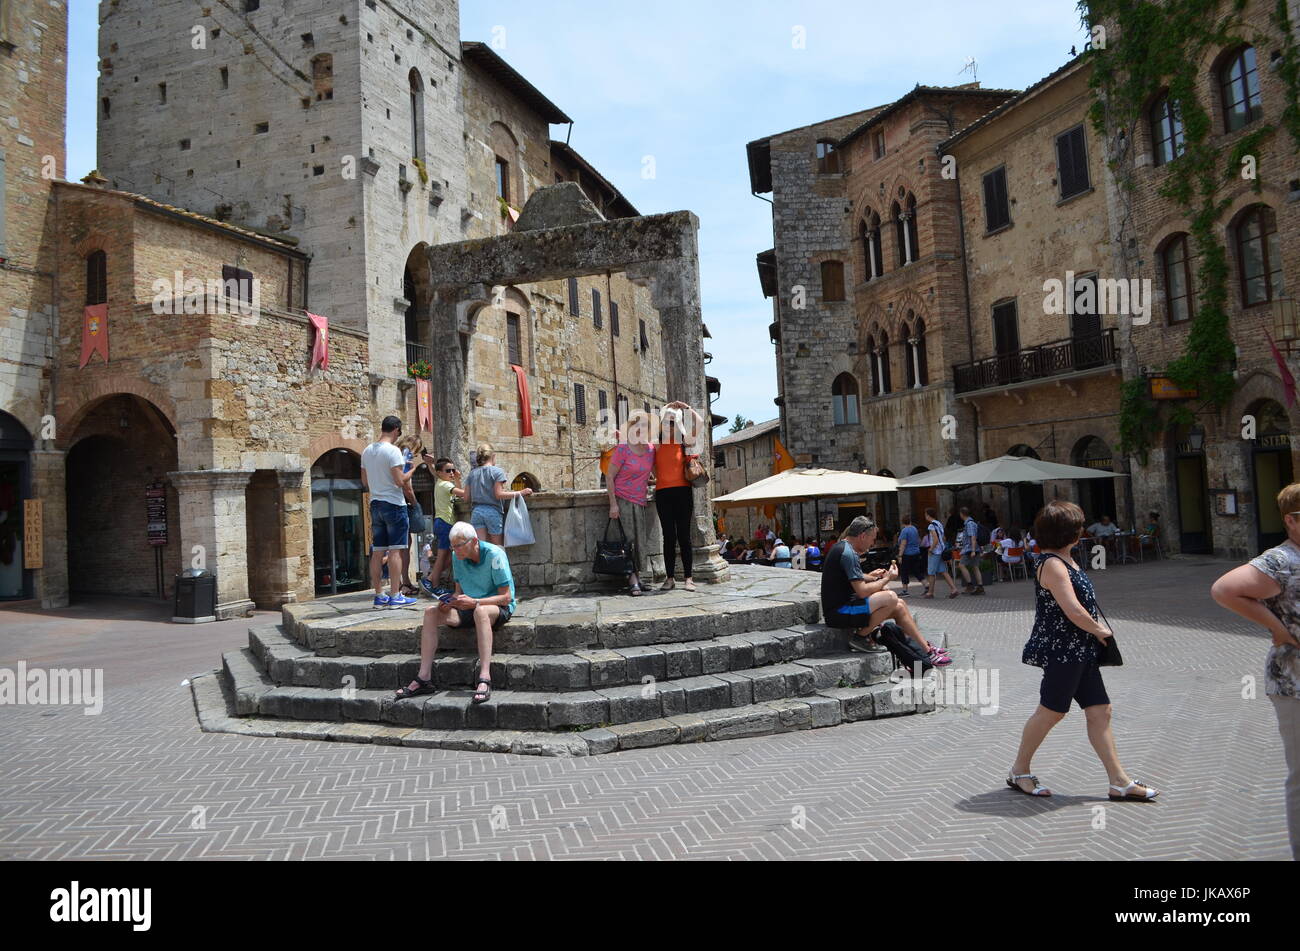 La cisterna in cui le persone fanno un desiderio in San Gimignano,Toscana, Italia. Foto Stock